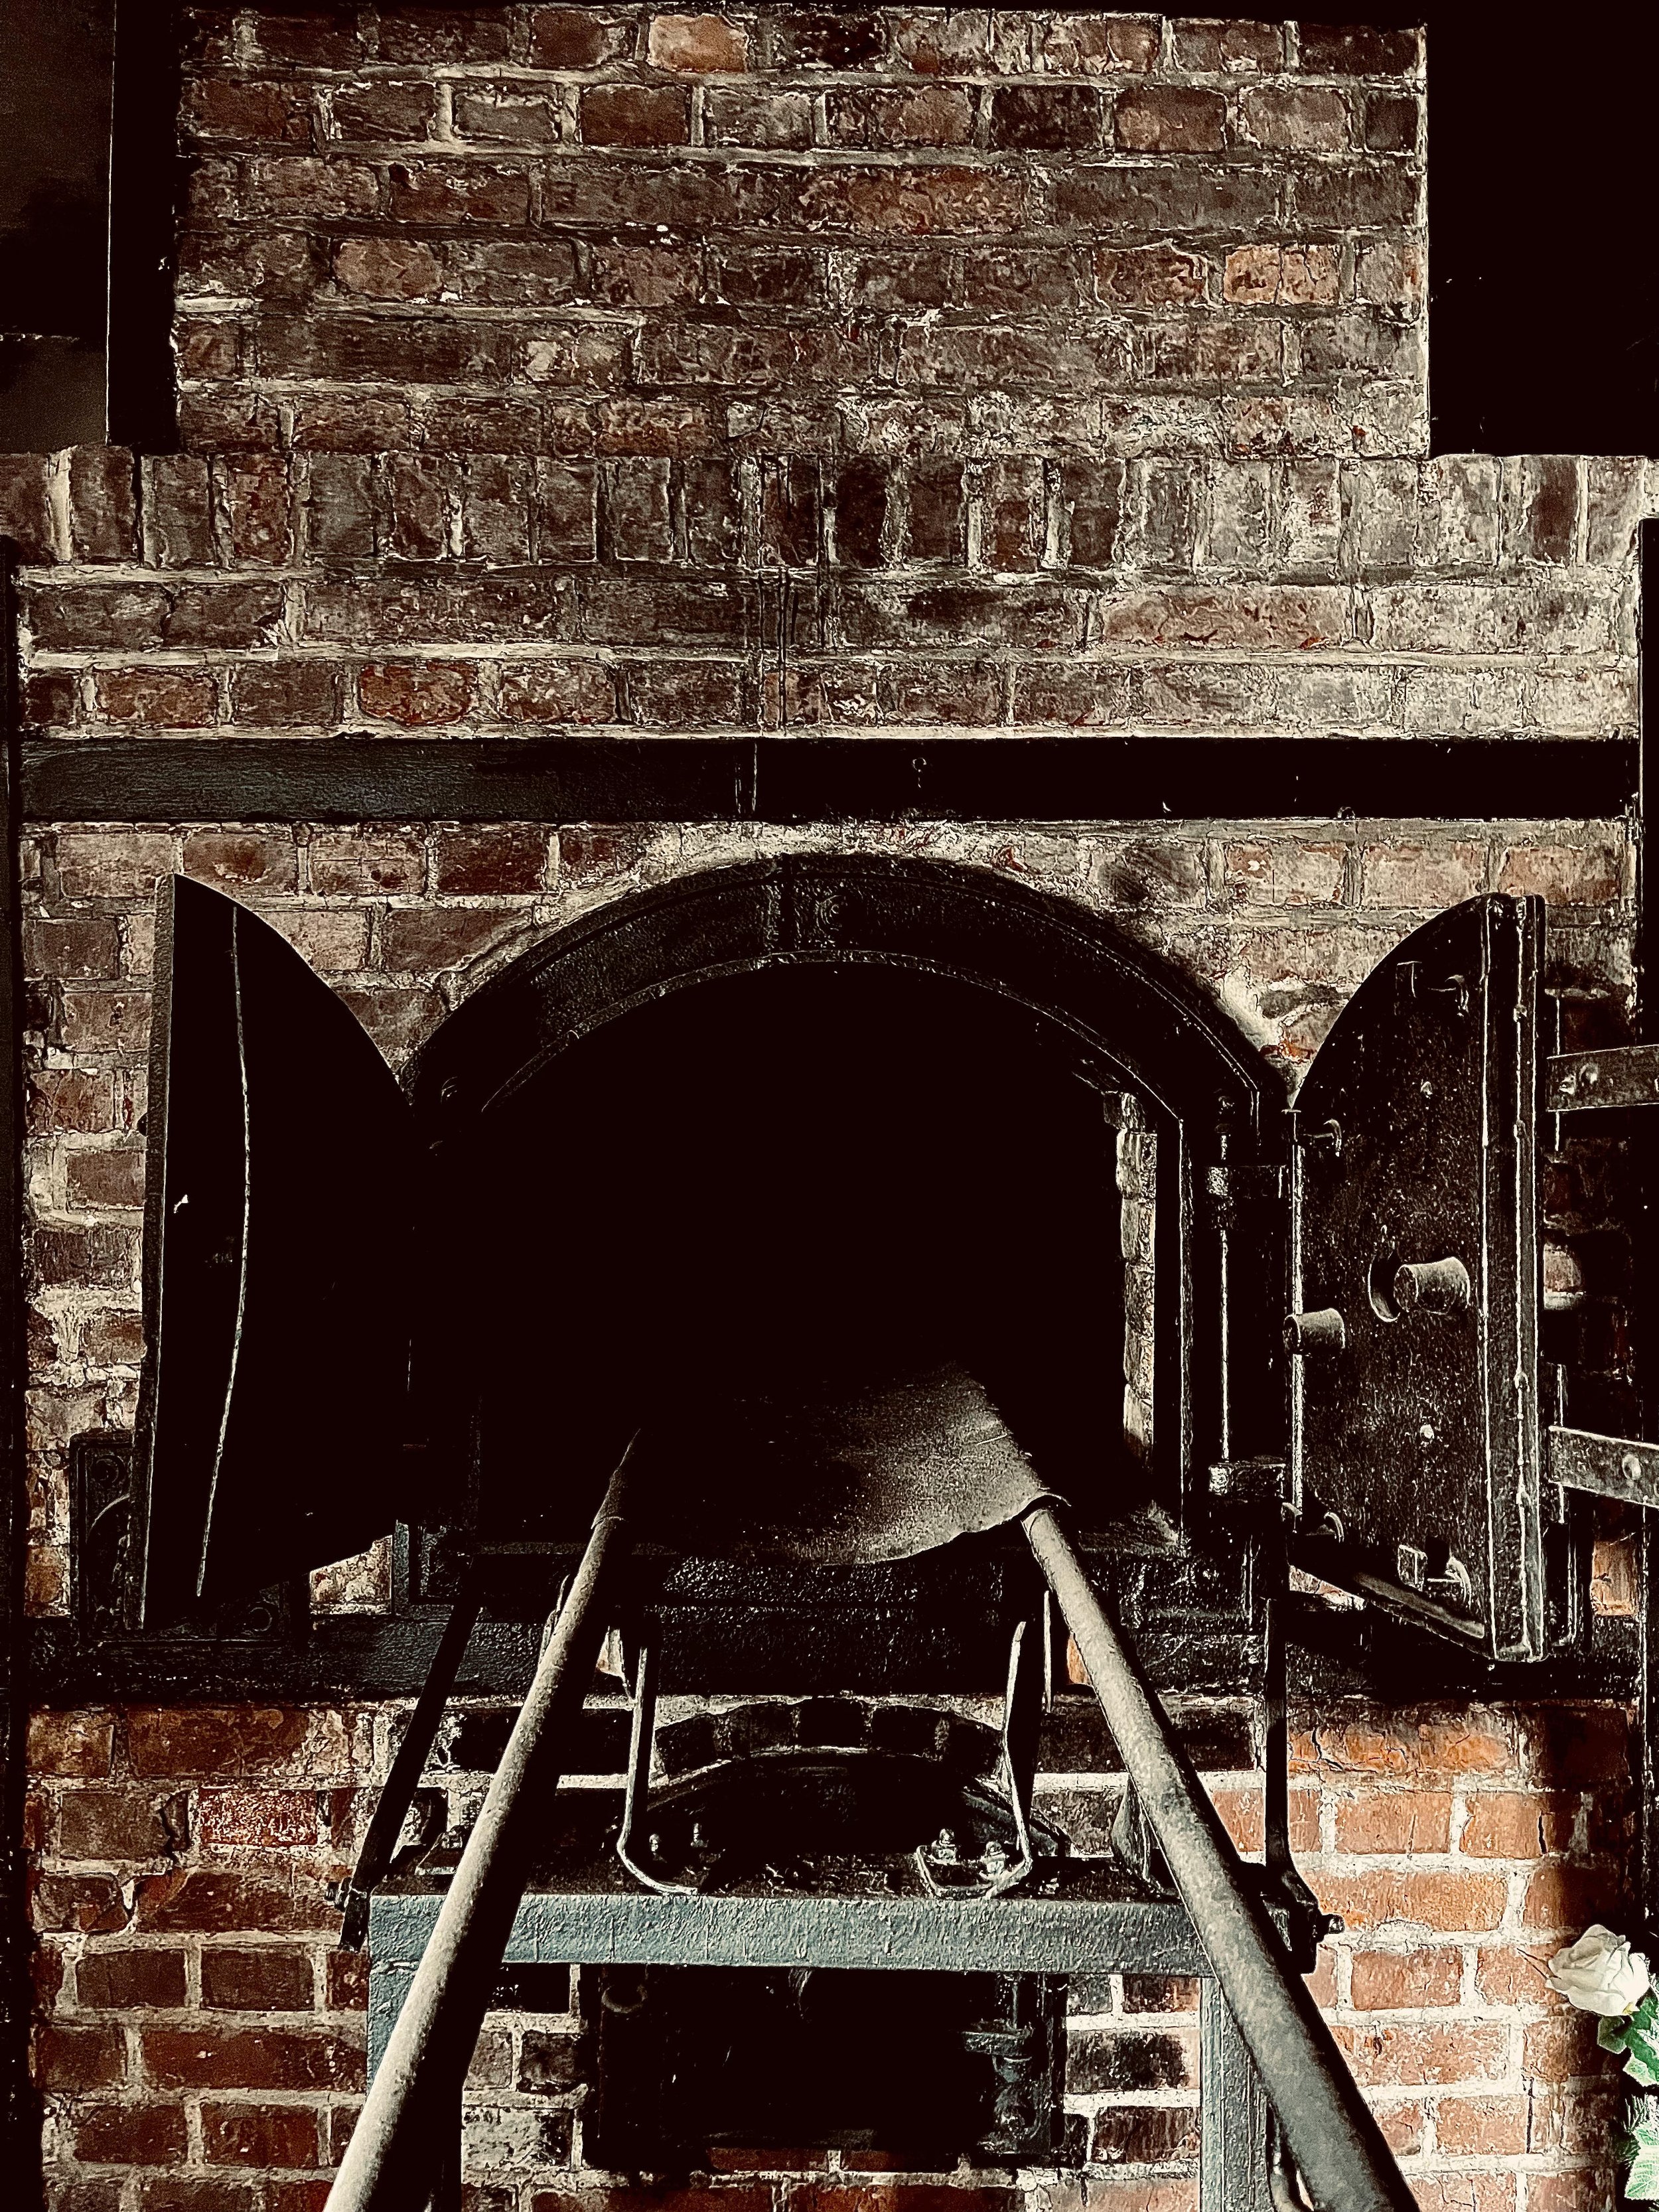 Main furnace in the crematorium